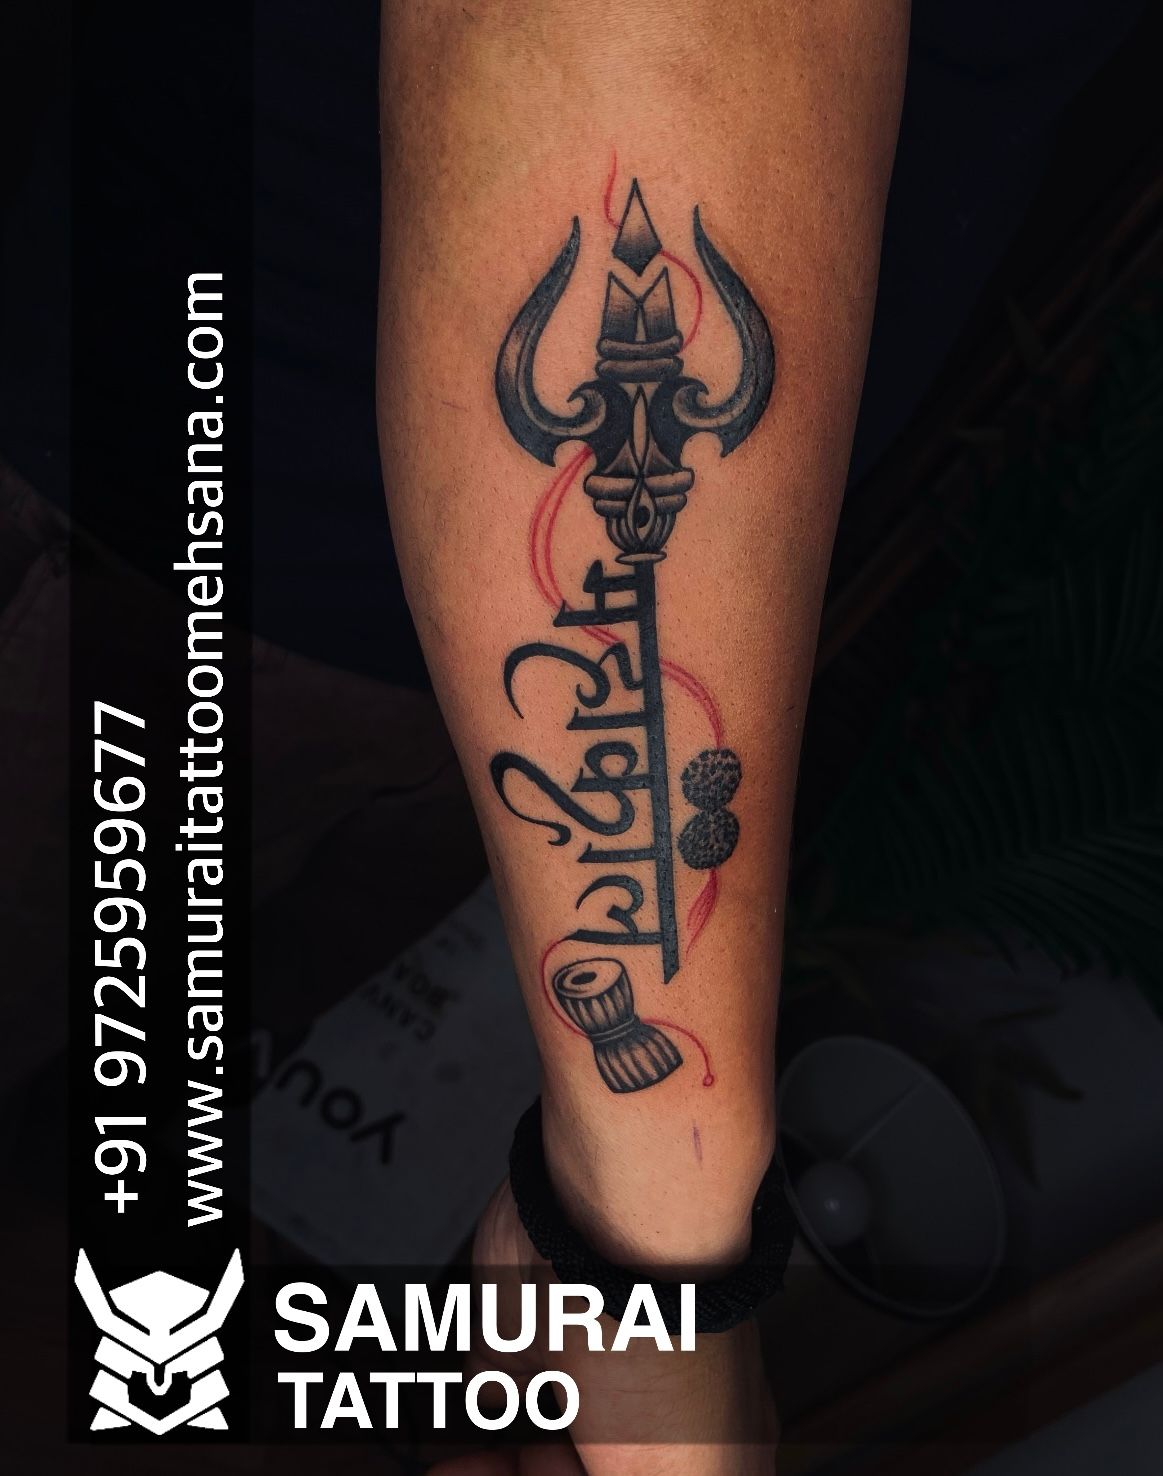 Shiva Trishul Tattoo by Javagreeen on DeviantArt